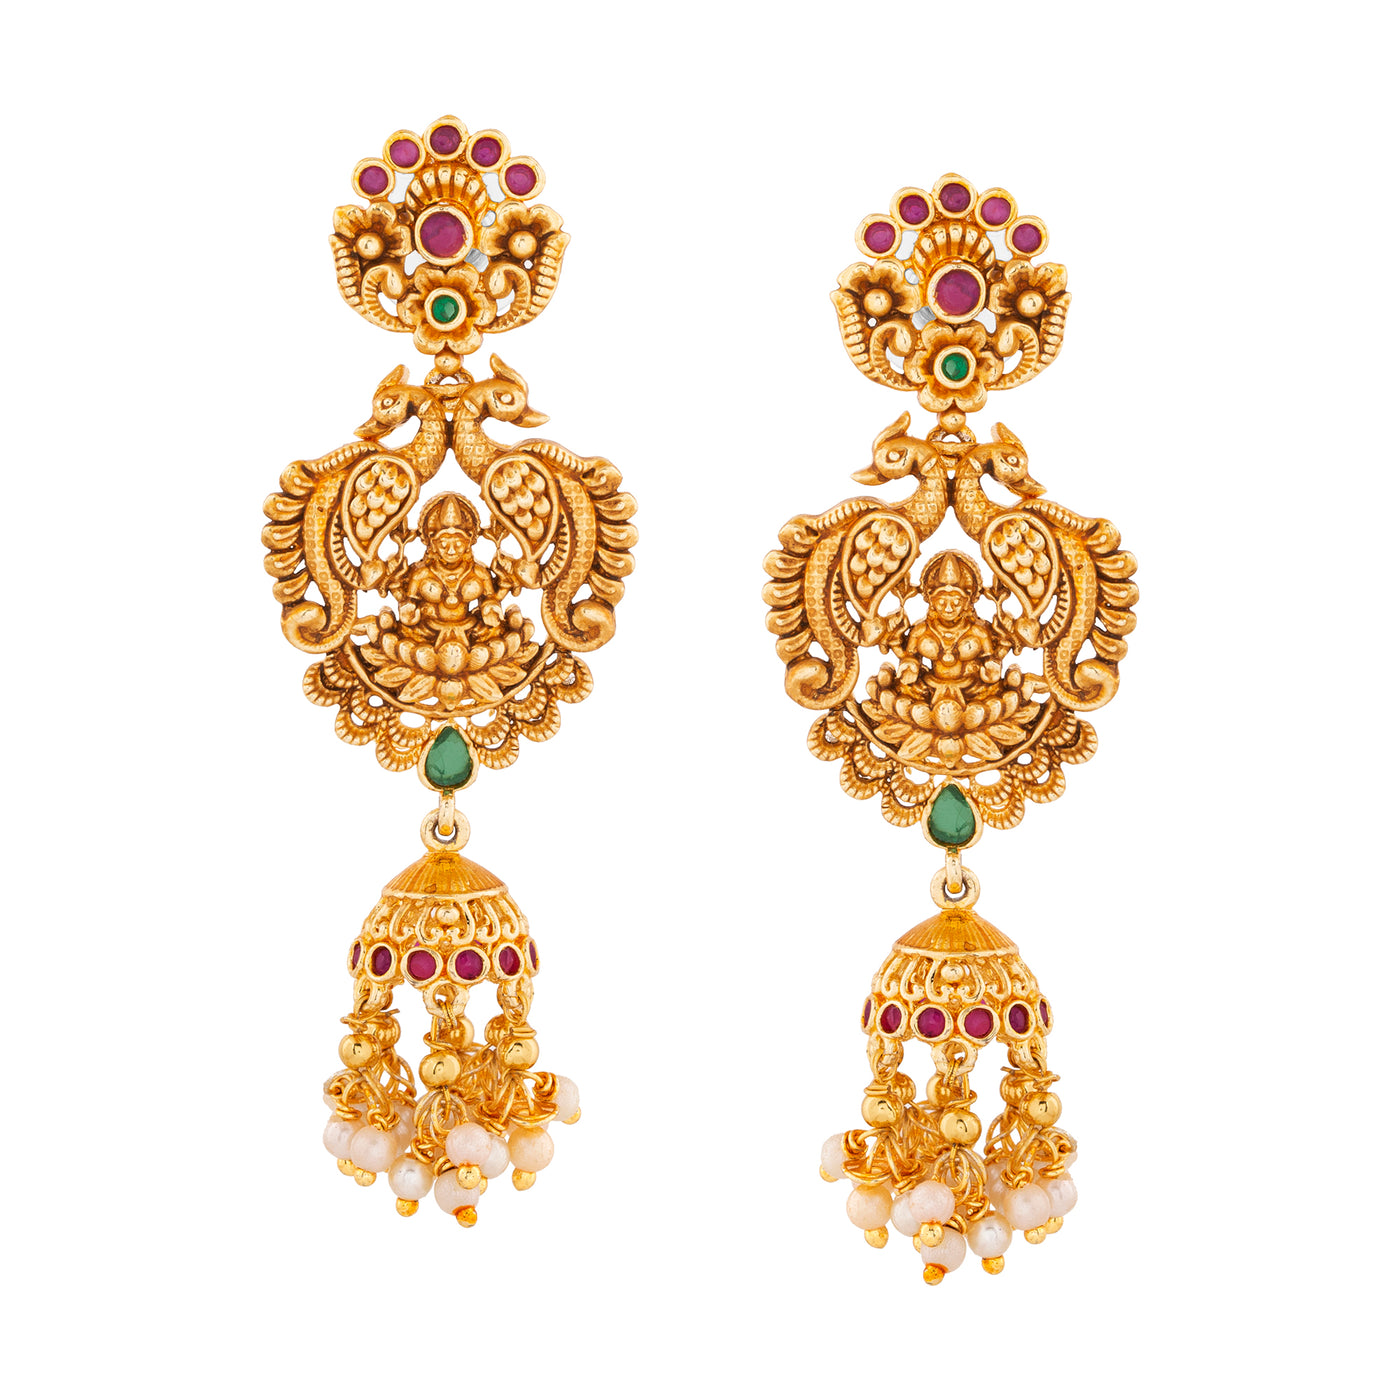 Estele Gold plated Divine Lakshmi Ji Bridal Necklace set with color stones & Pearls